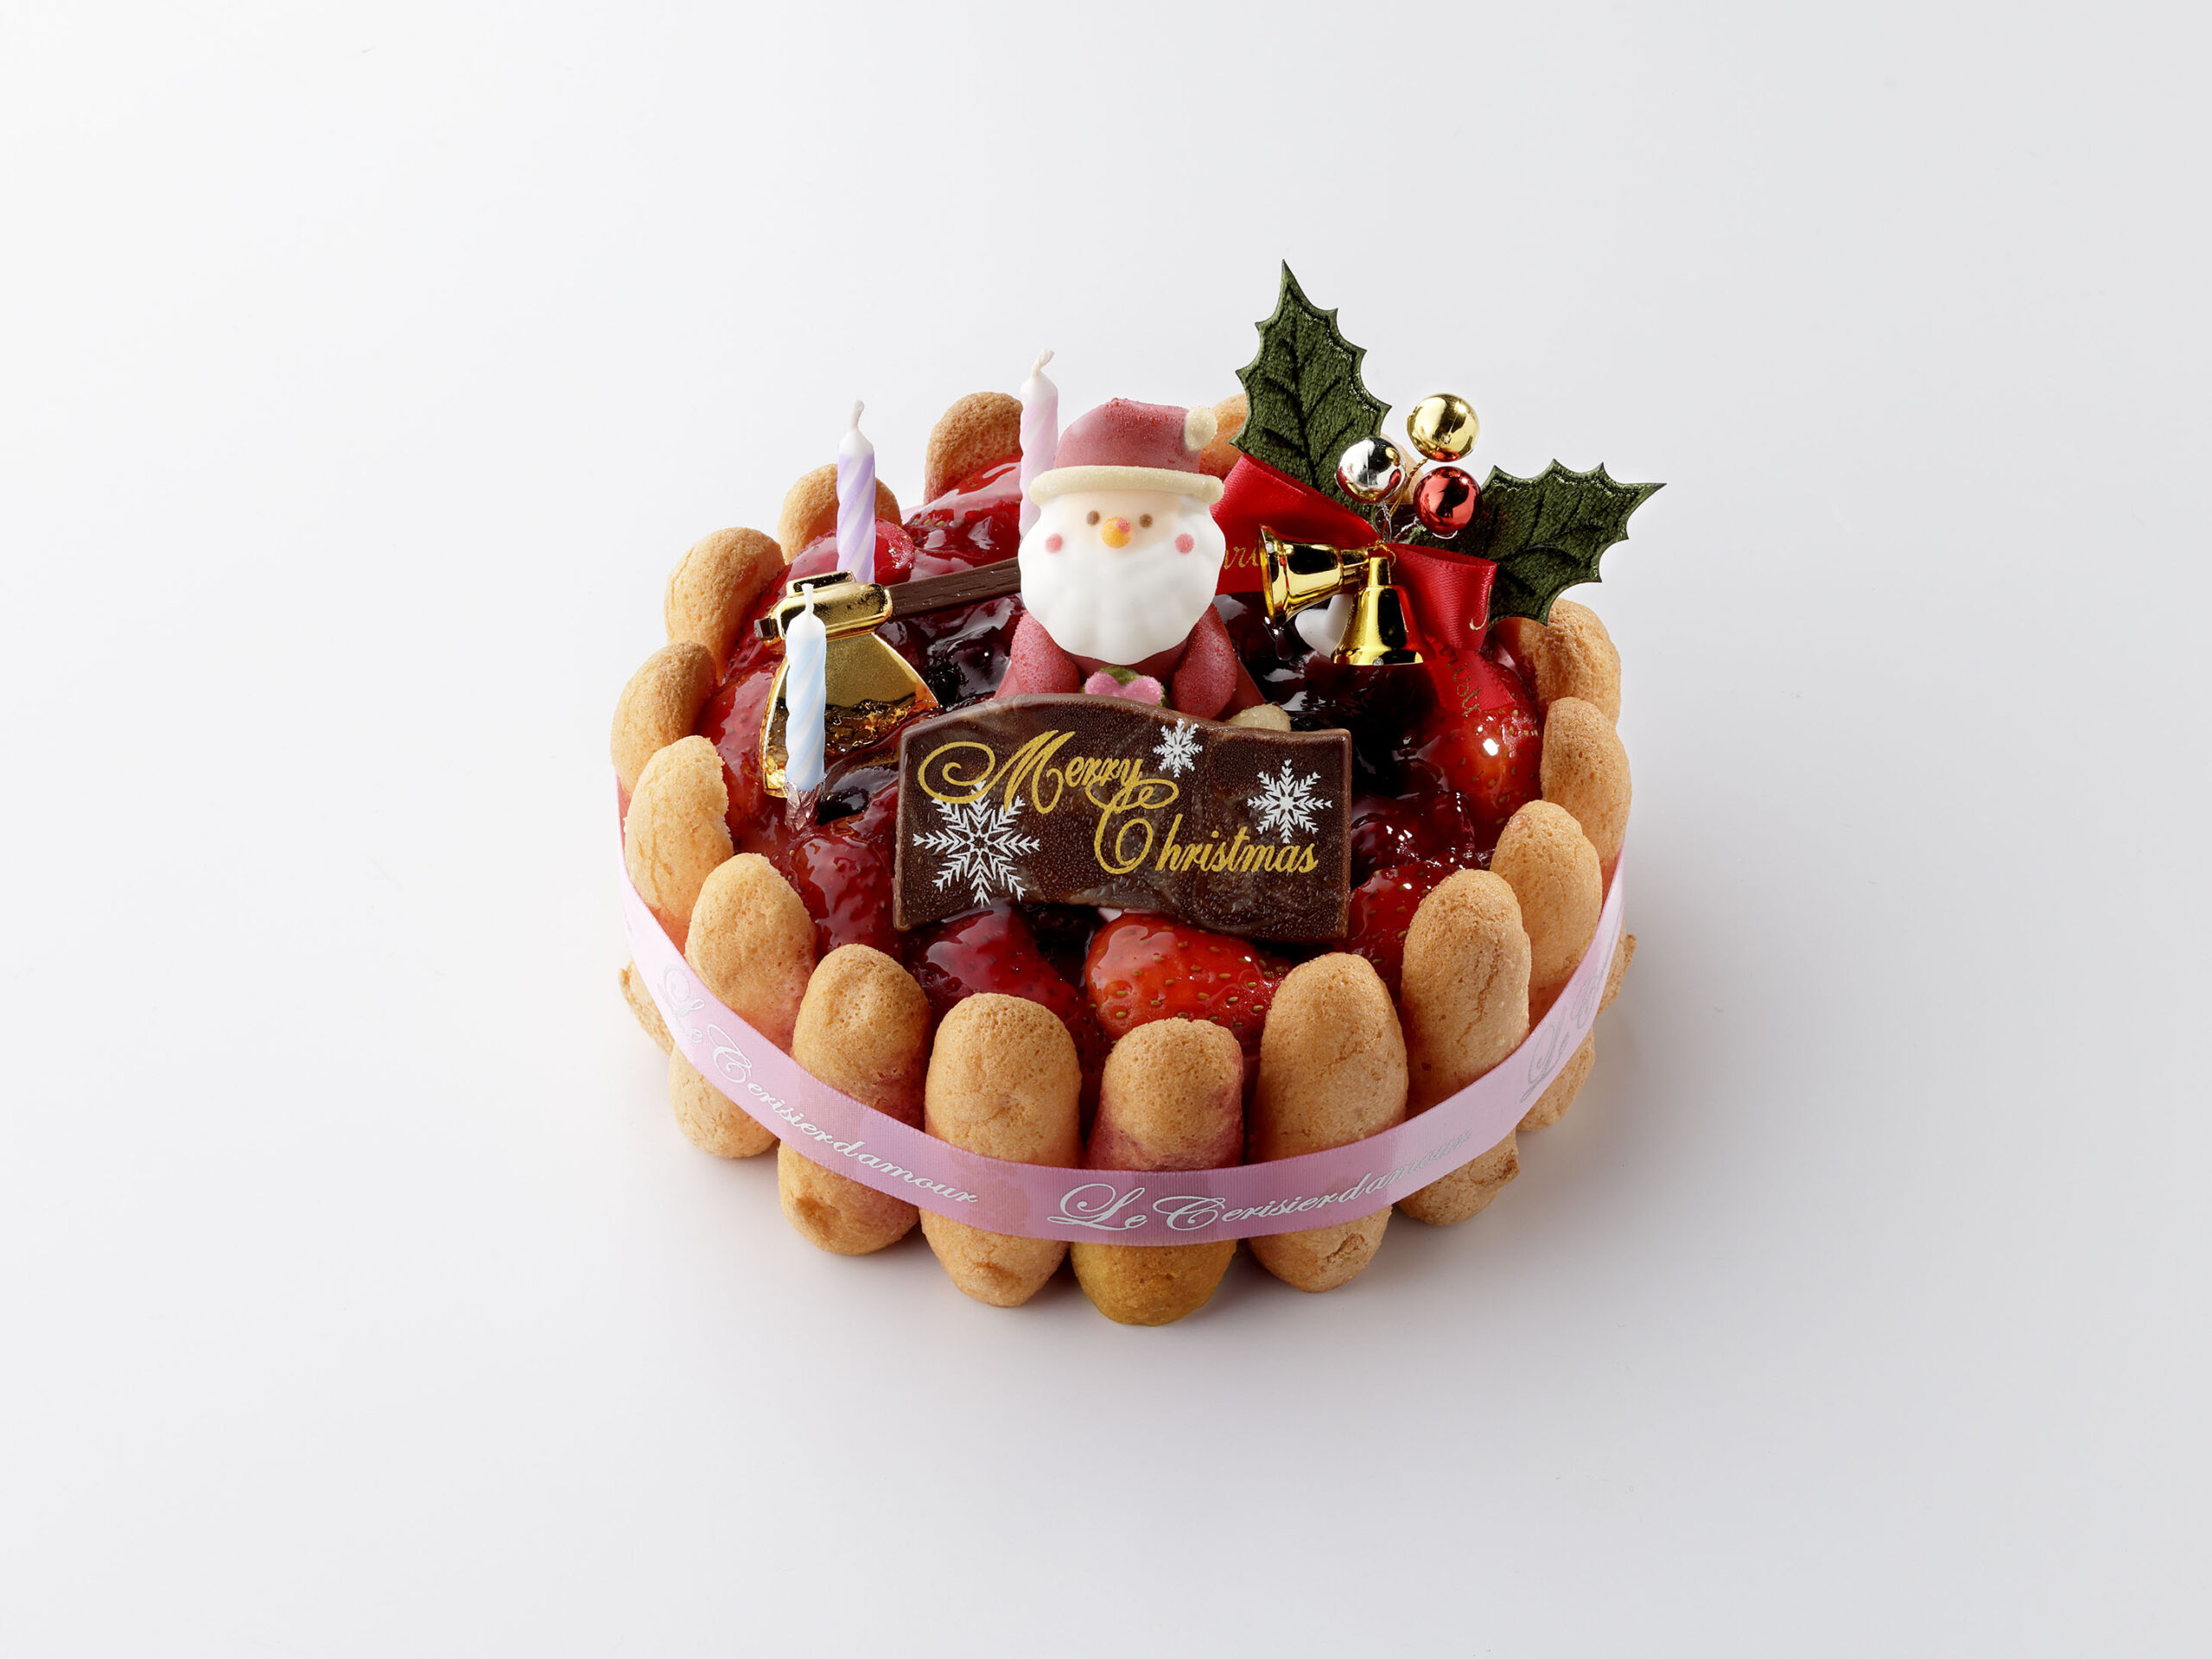 市橋店の限定ケーキは、王道のシャルロットケーキとなり、イチゴとバニラのムースをベリー系のフルーツで仕上げてあります。<br /> 見た目も華やかなクリスマスケーキで楽しいクリスマスをいかがでしょうか。